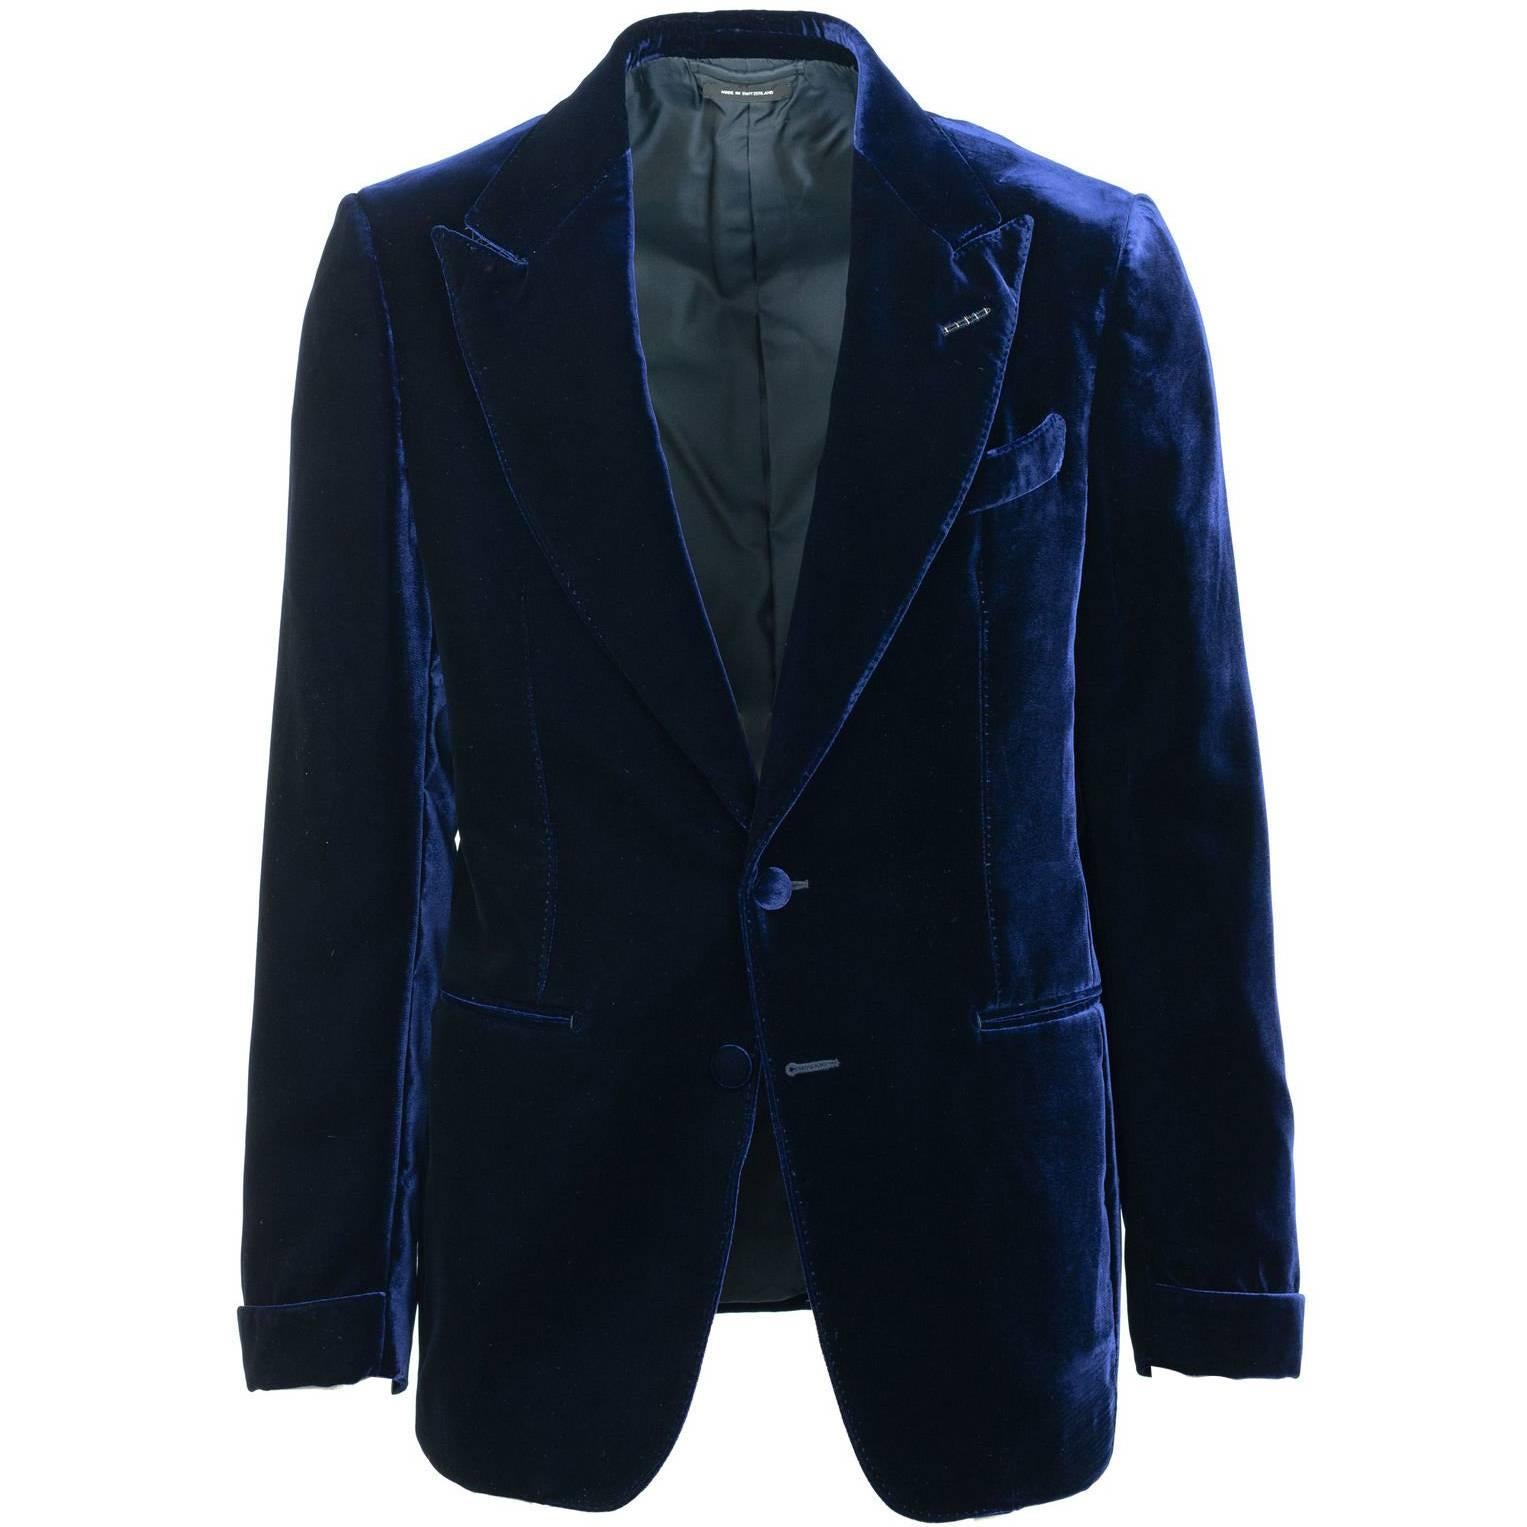 Tom Ford Dark Blue Velvet Conceal Hem Shelton Cocktail Jacket Sz 48/38R RTL$3980